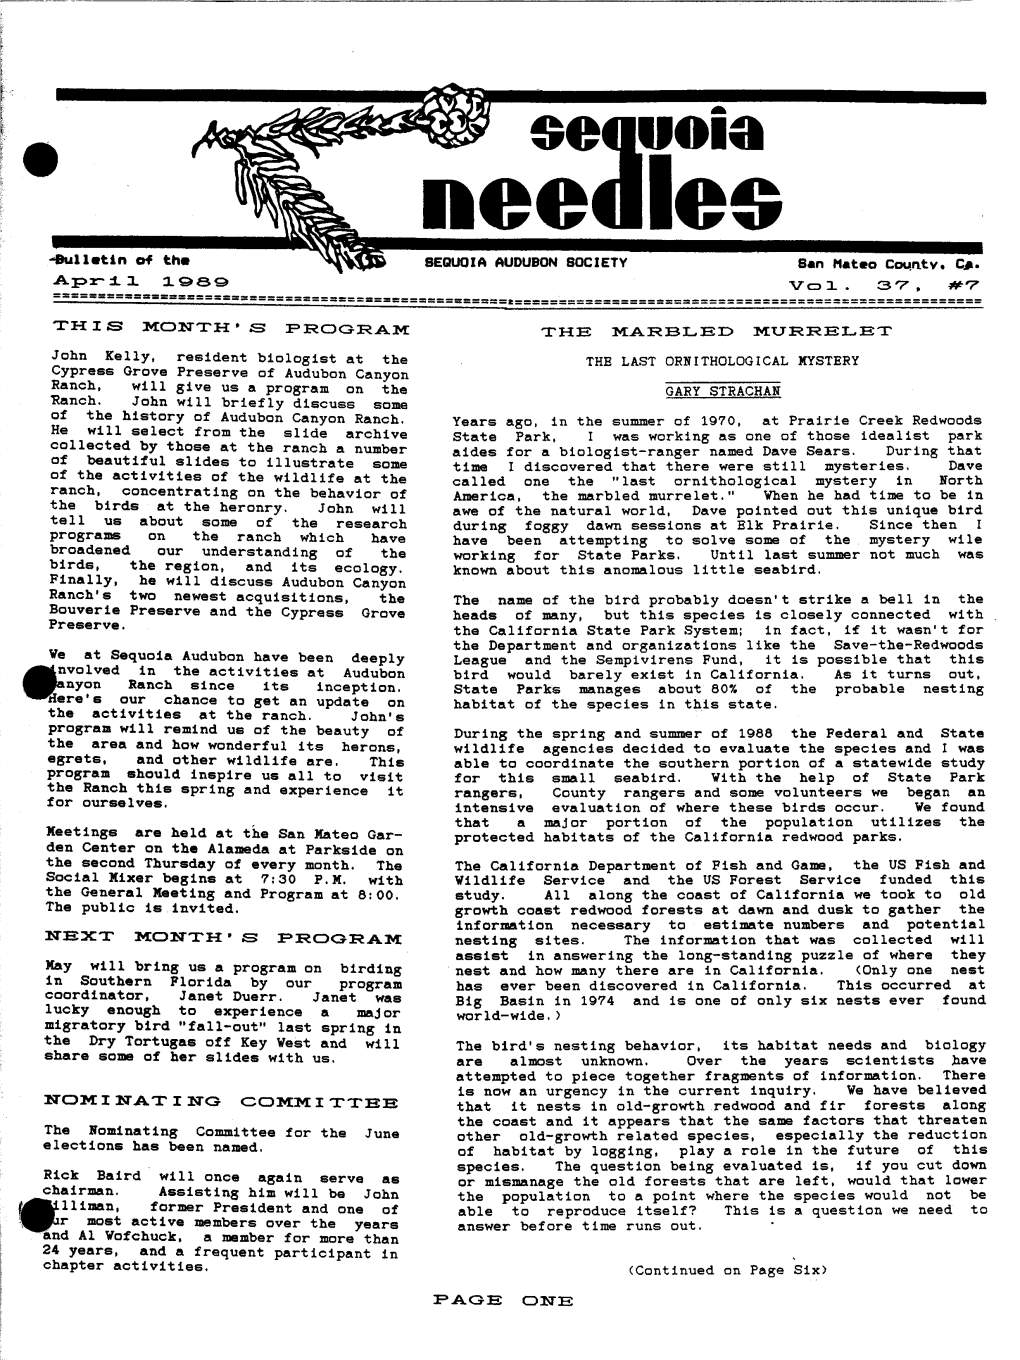 Needles-V037-07-1989